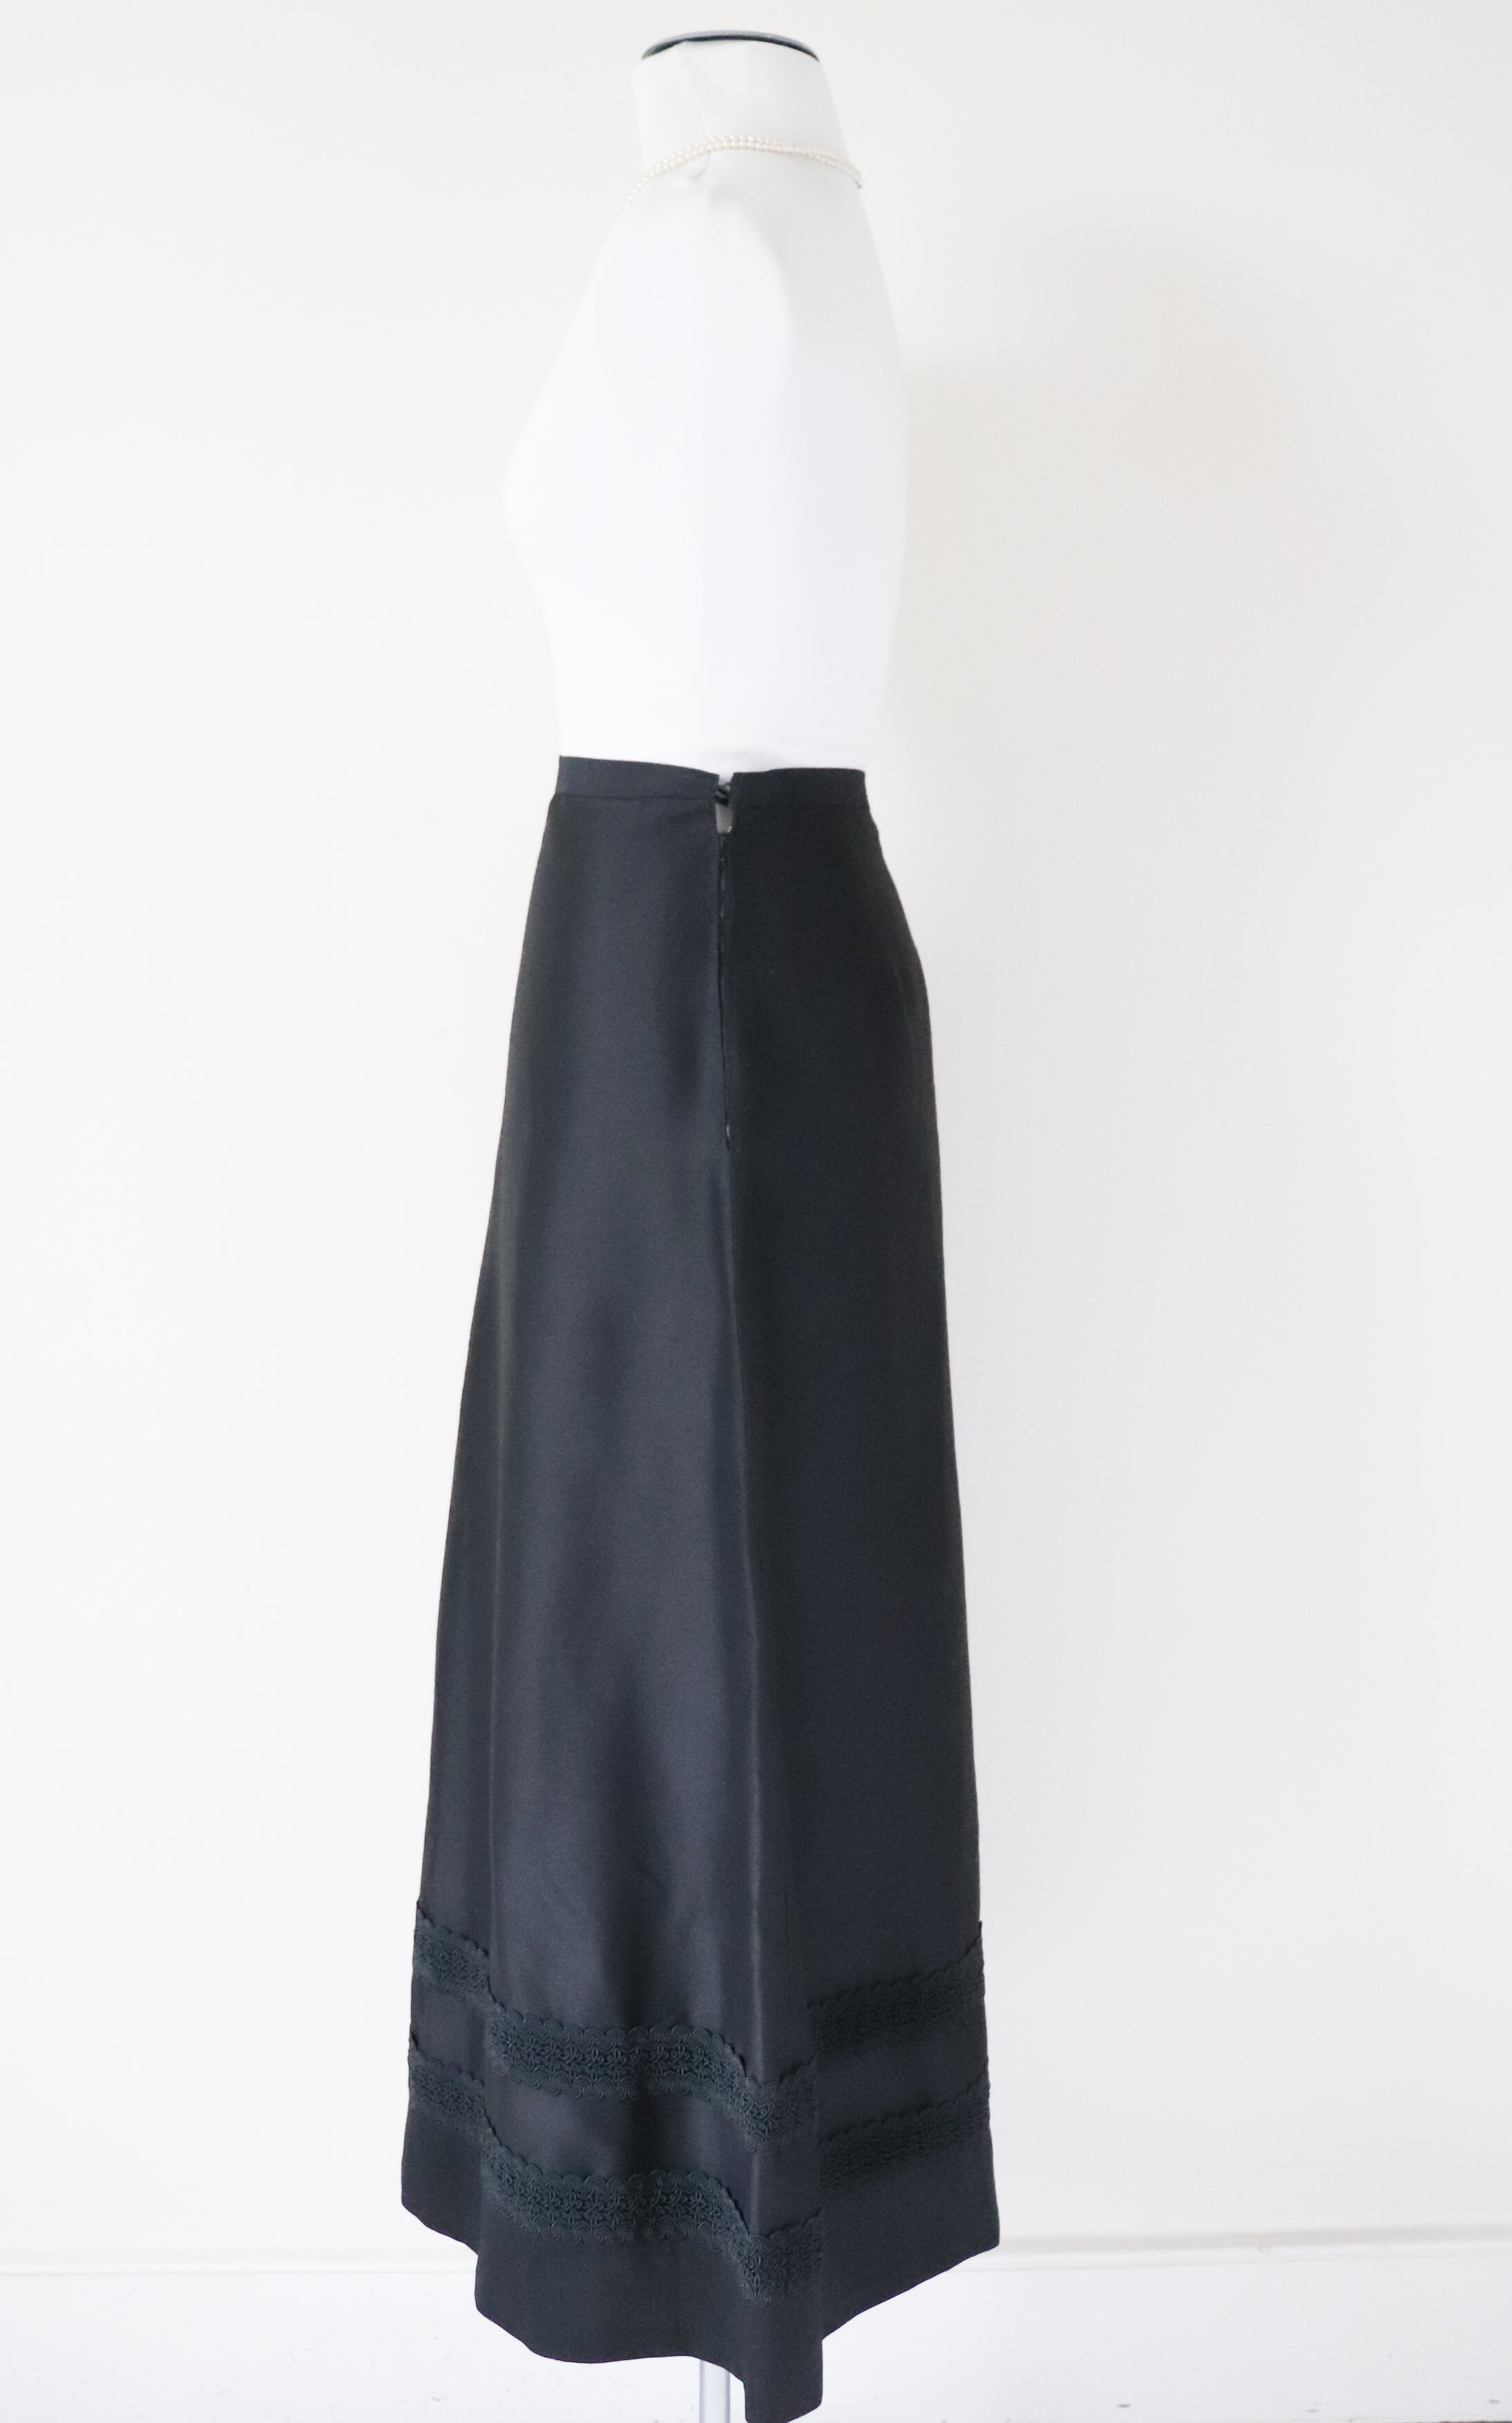 Vintage Black Long Tyrol Skirt -  Maxi - XXS /  UK 6